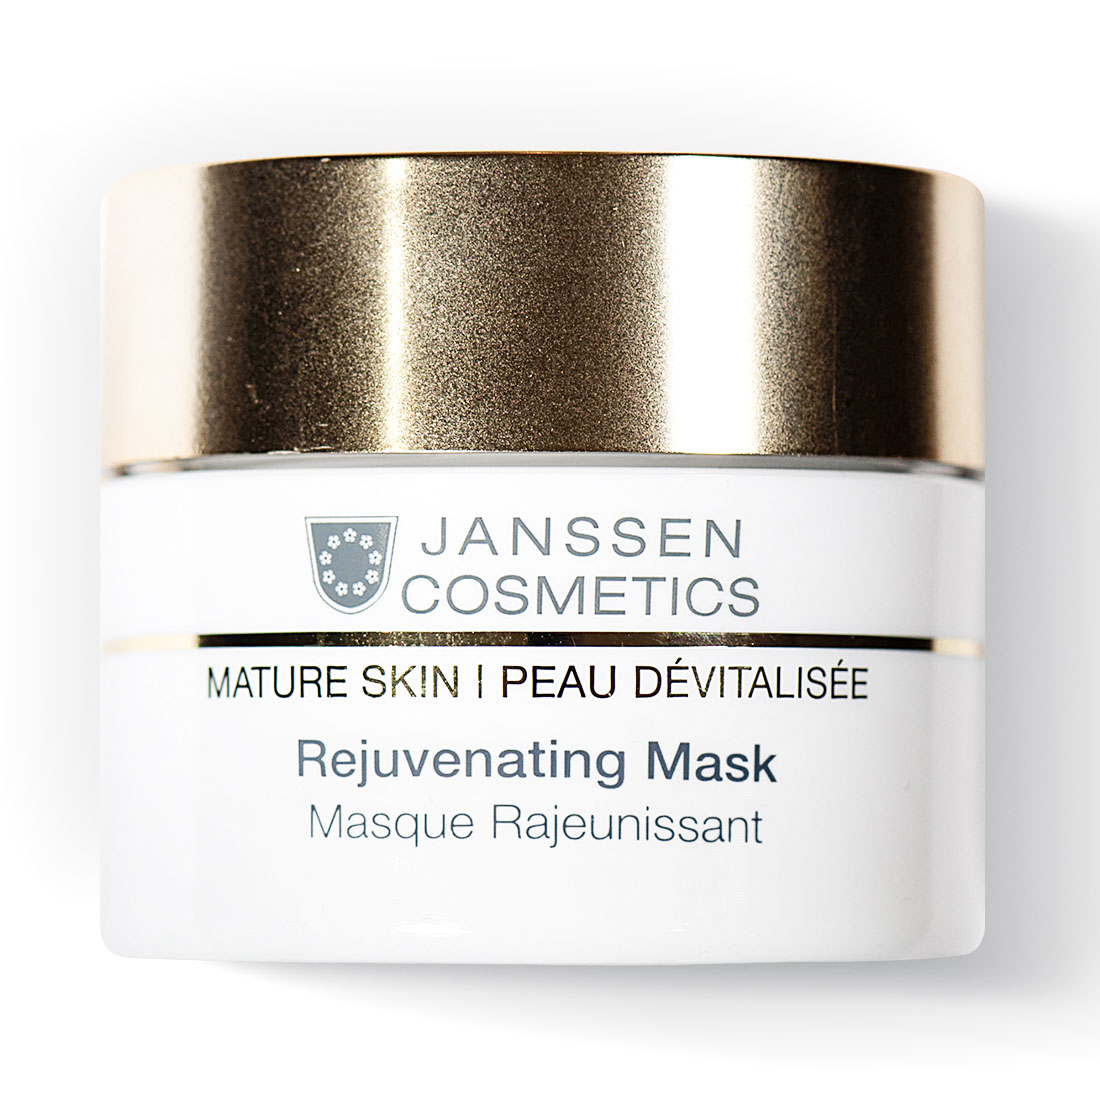 Janssen Cosmetics Омолаживающая крем-маска Rejuvenating Mask, 50 мл (Janssen Cosmetics, Mature Skin) janssen cosmetics rich energy mask энергонасыщающая регенерирующая маска 50 мл